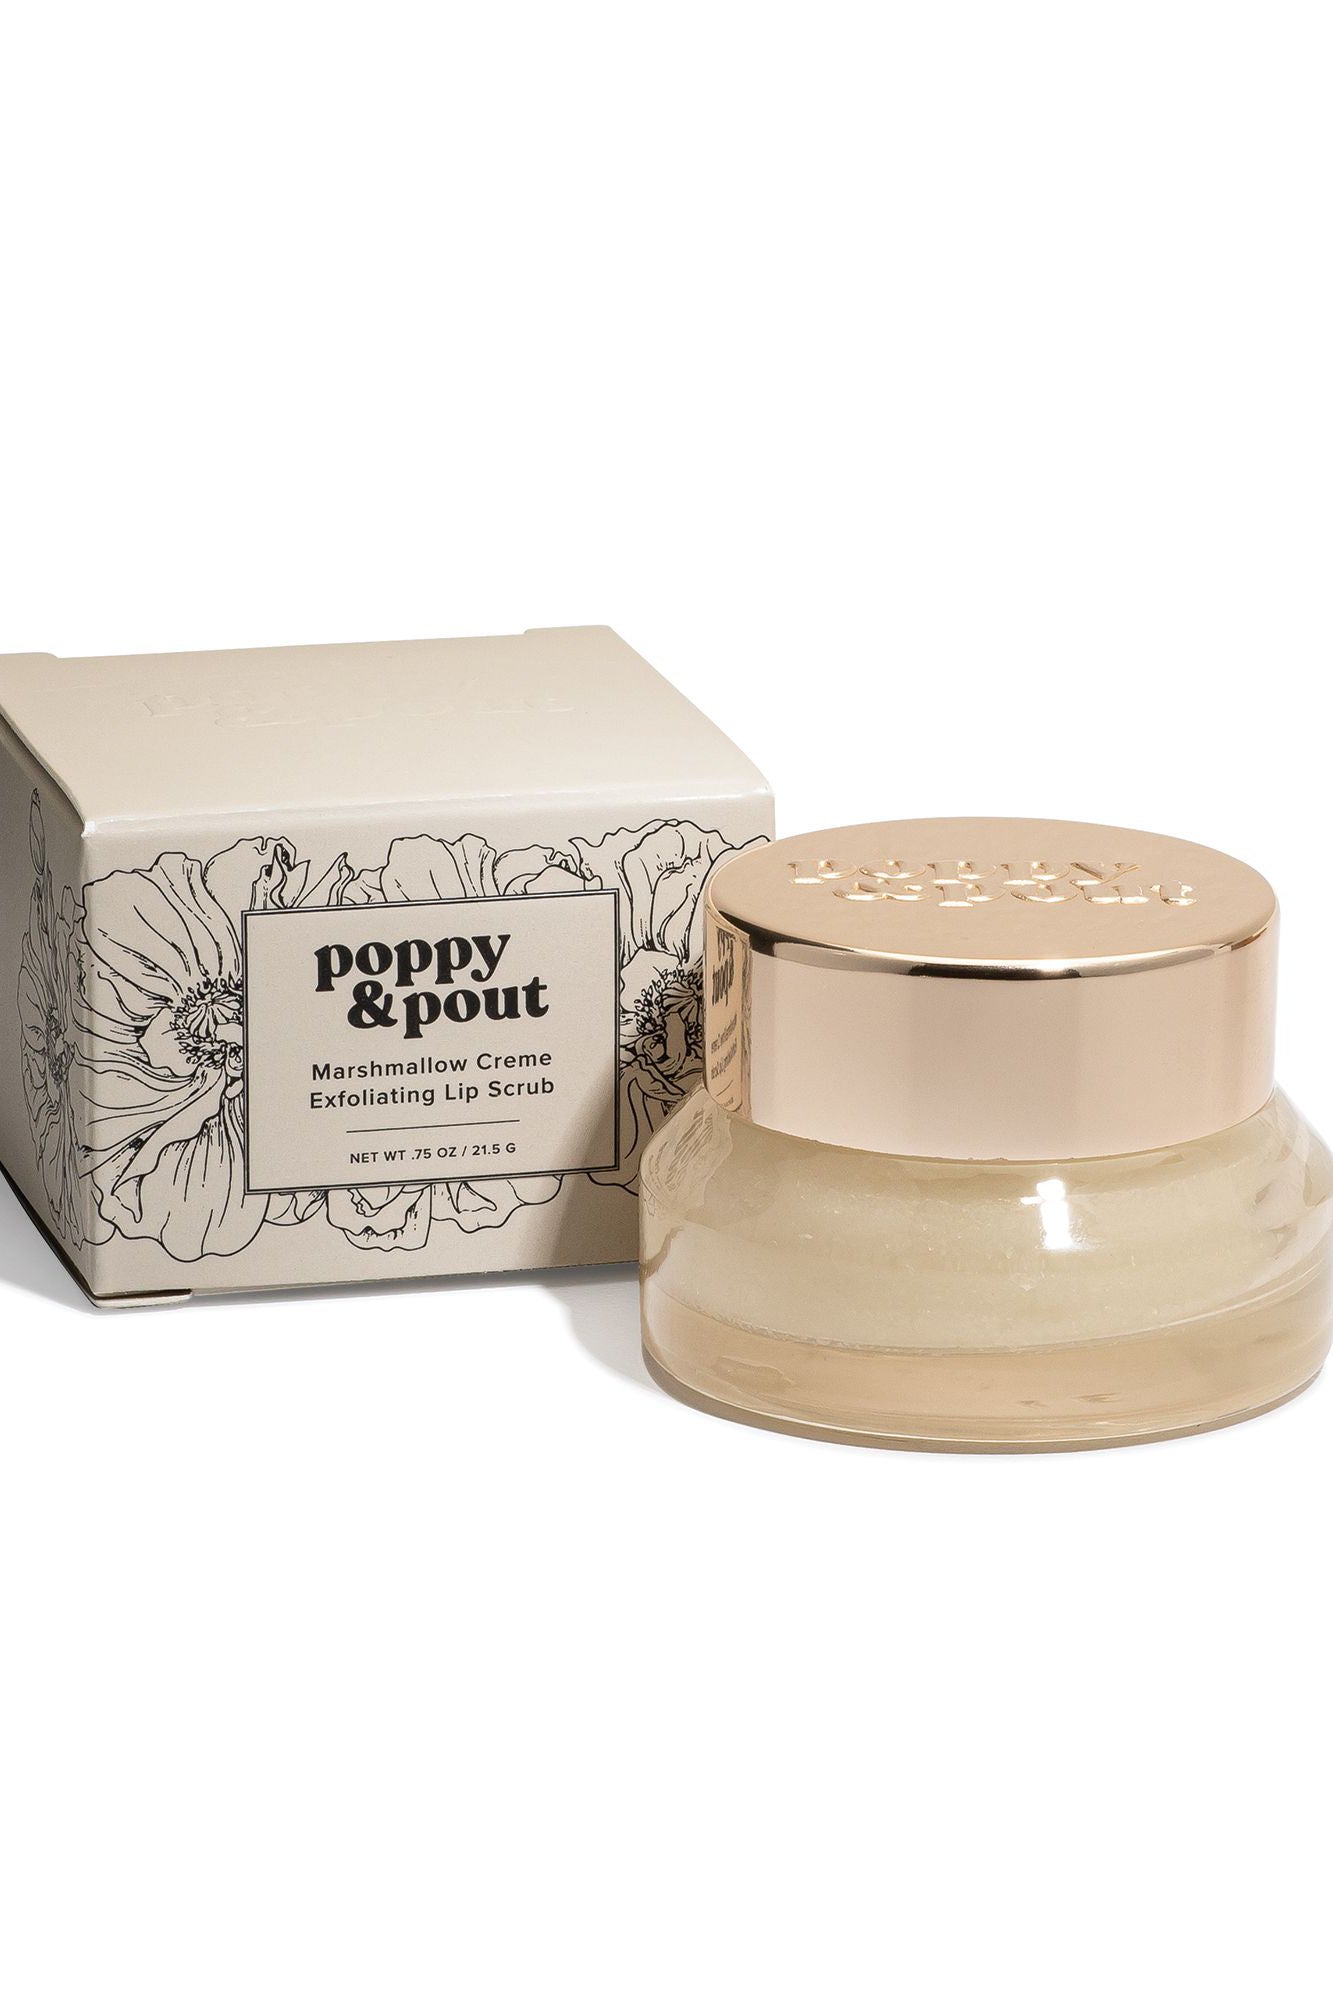 Poppy & Pout Lip Scrub / Marshmallow Creme